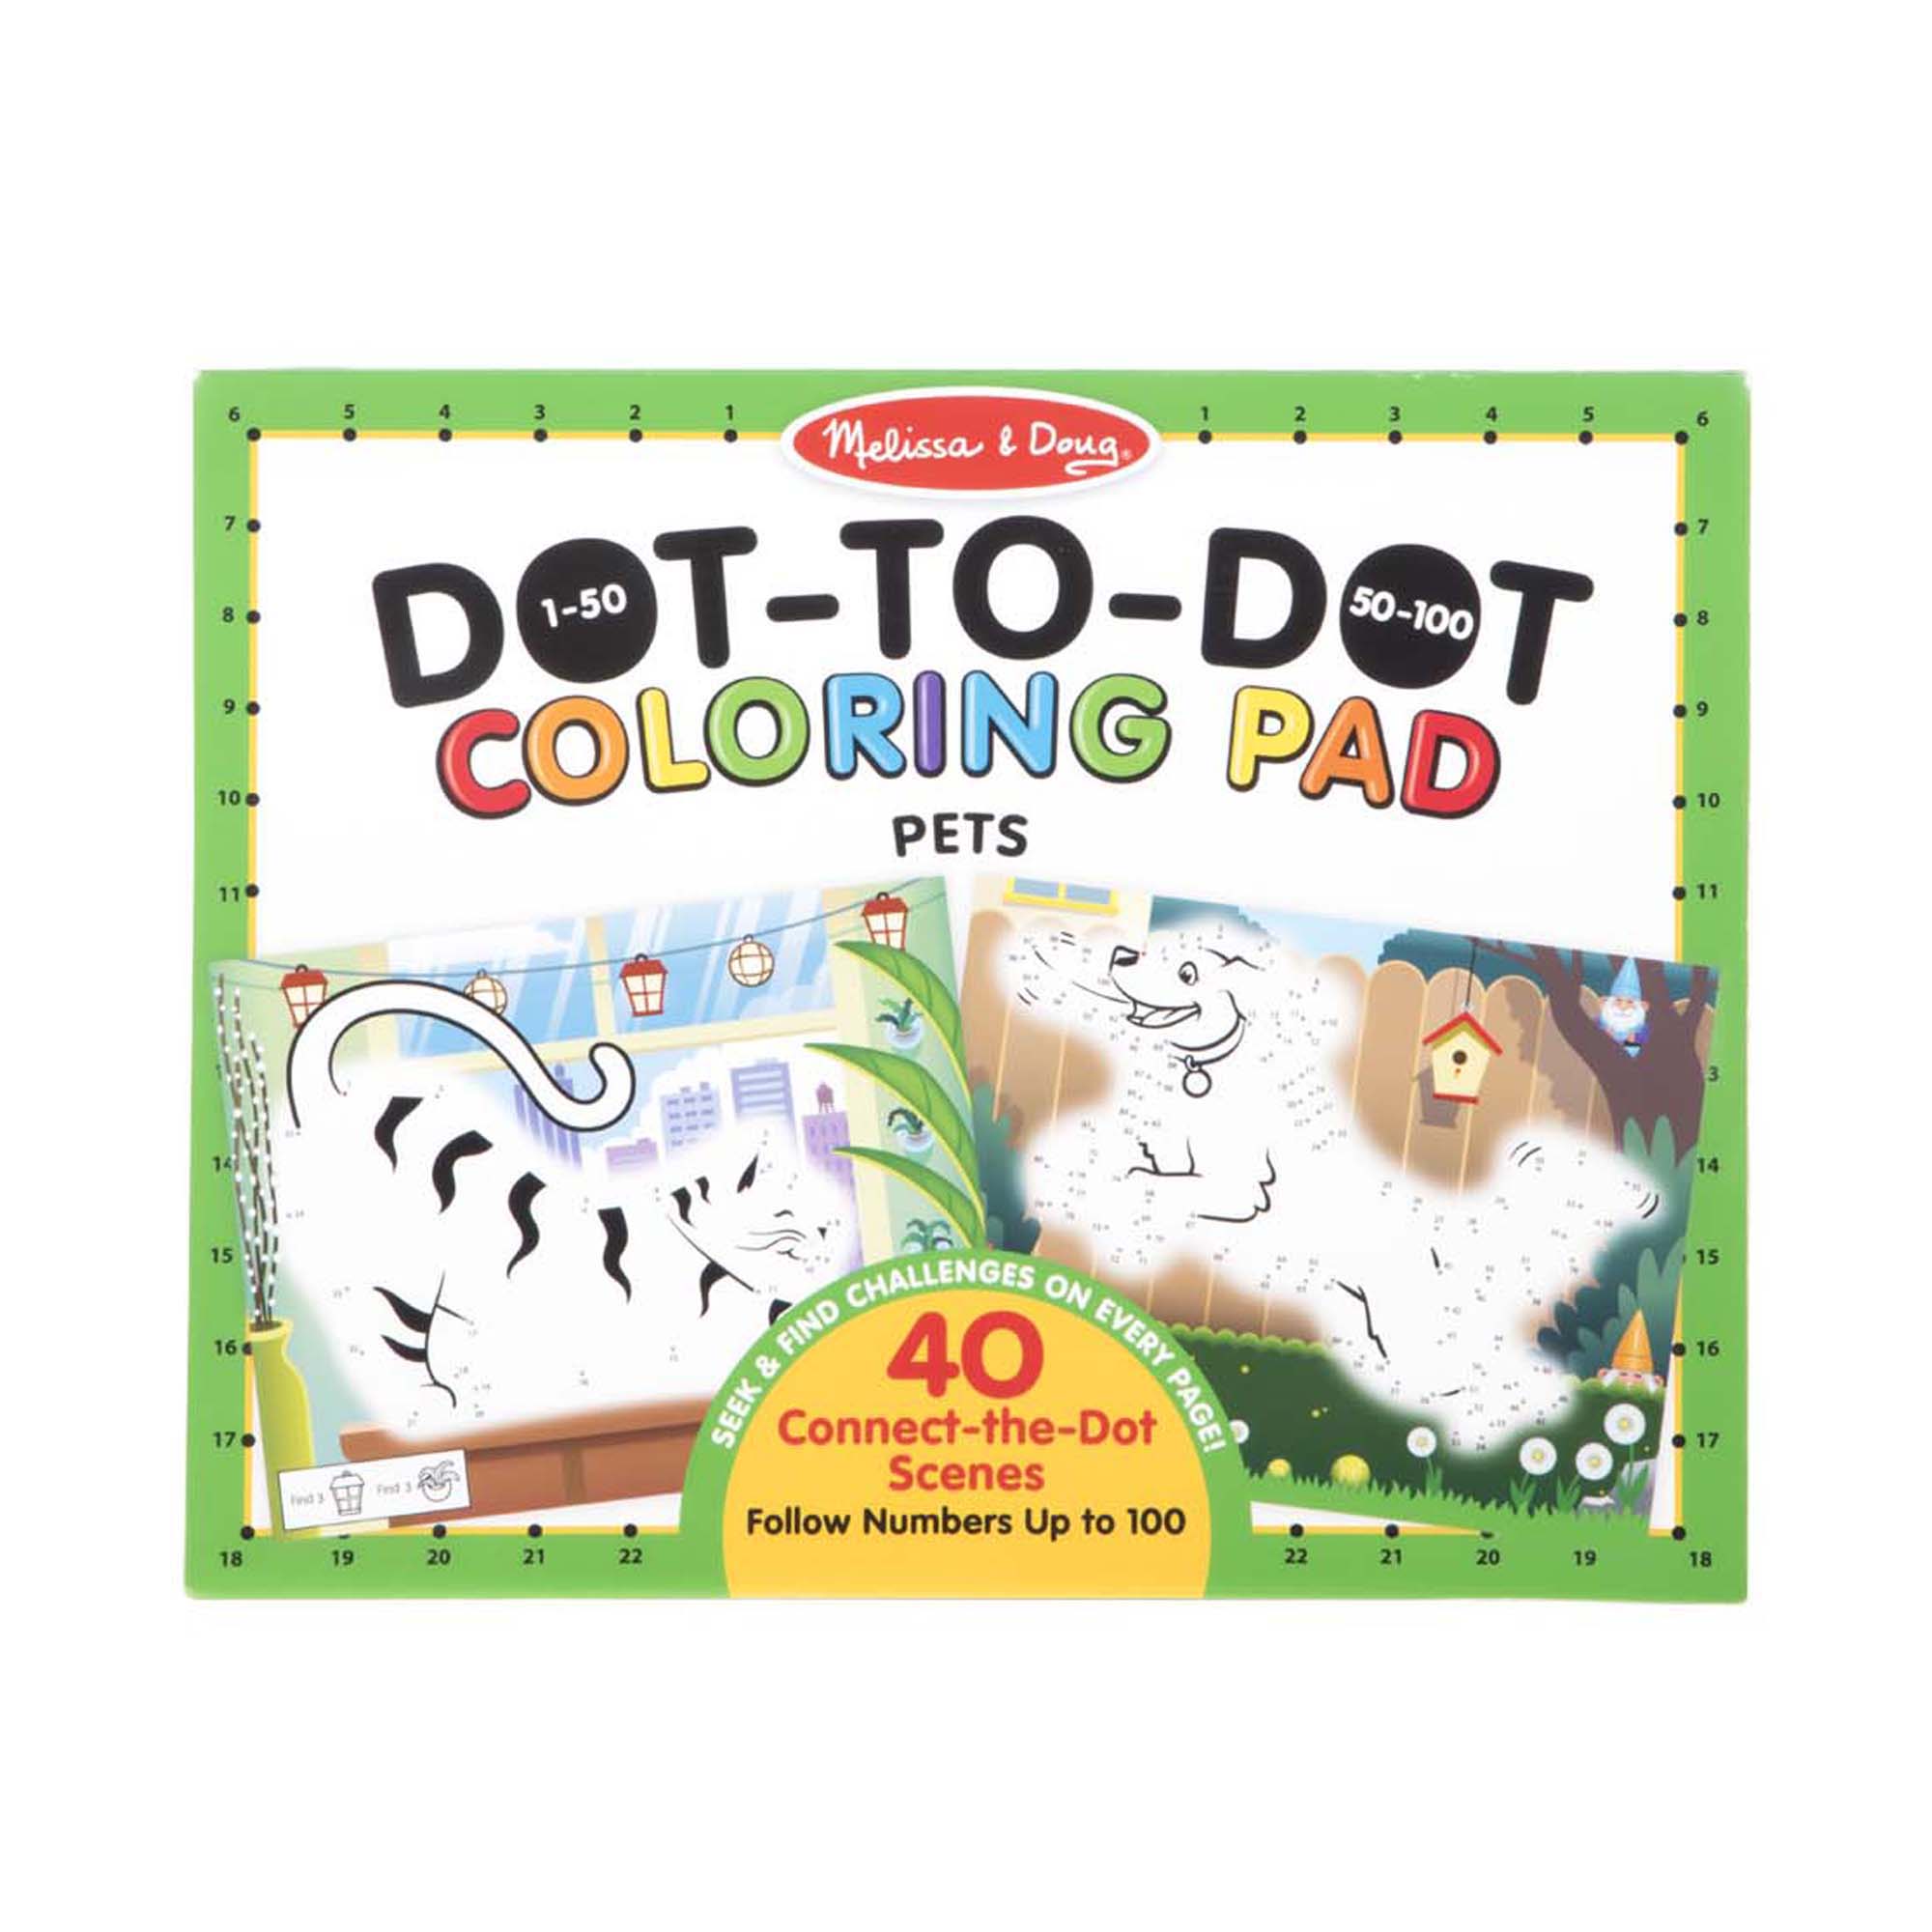 Dot-to-Dot Coloring Pad - Pets